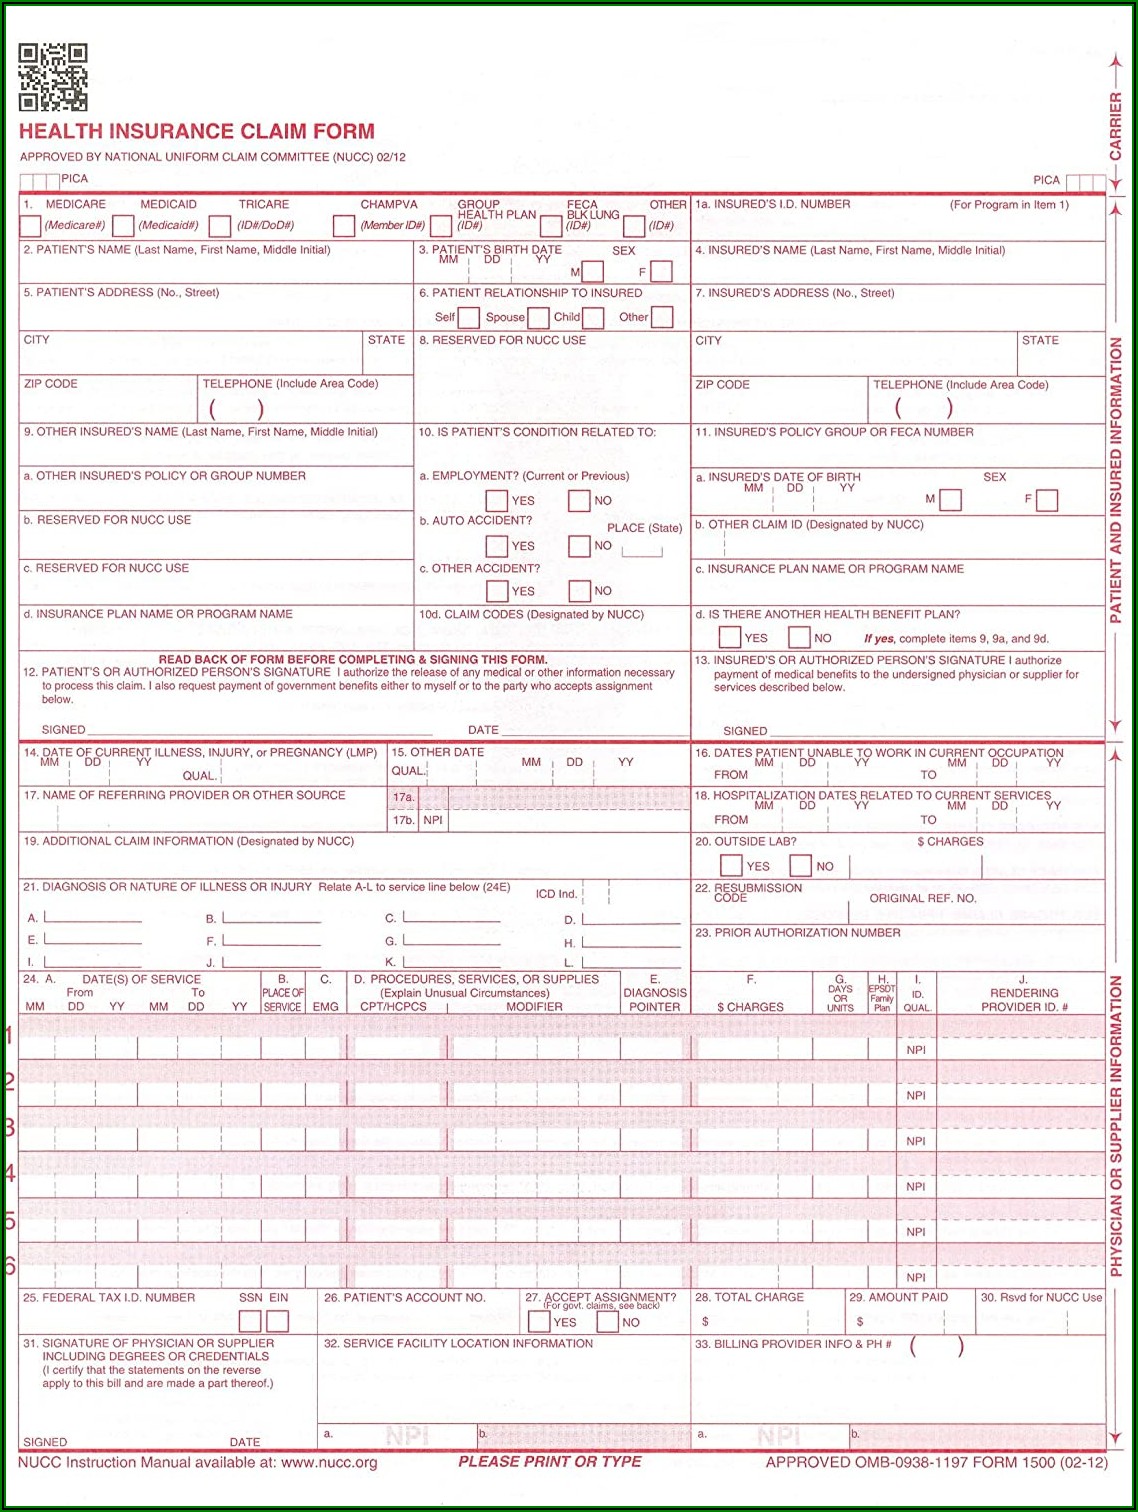 Cms.gov Hcfa 1500 Form